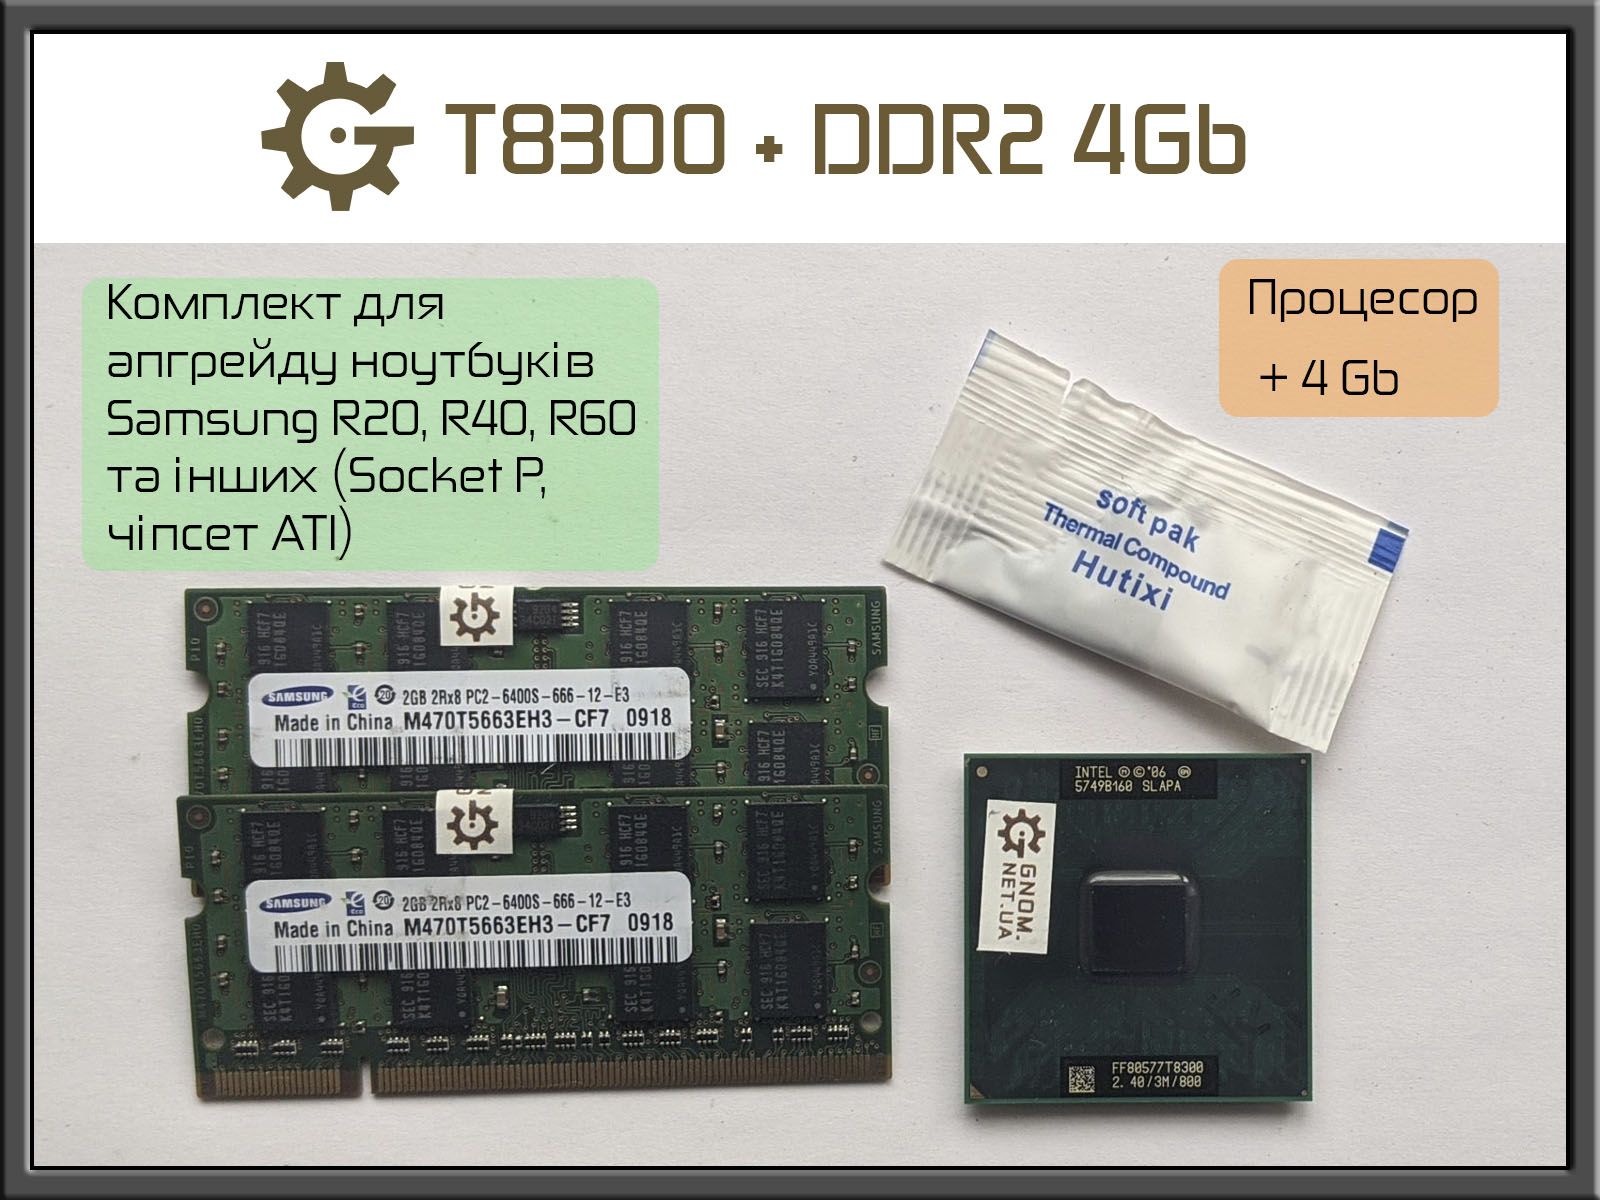 Апгрейд Samsung R20 R40 R60 Процессор T8300 2х2,4 DDR2 4 Gb 6400 800